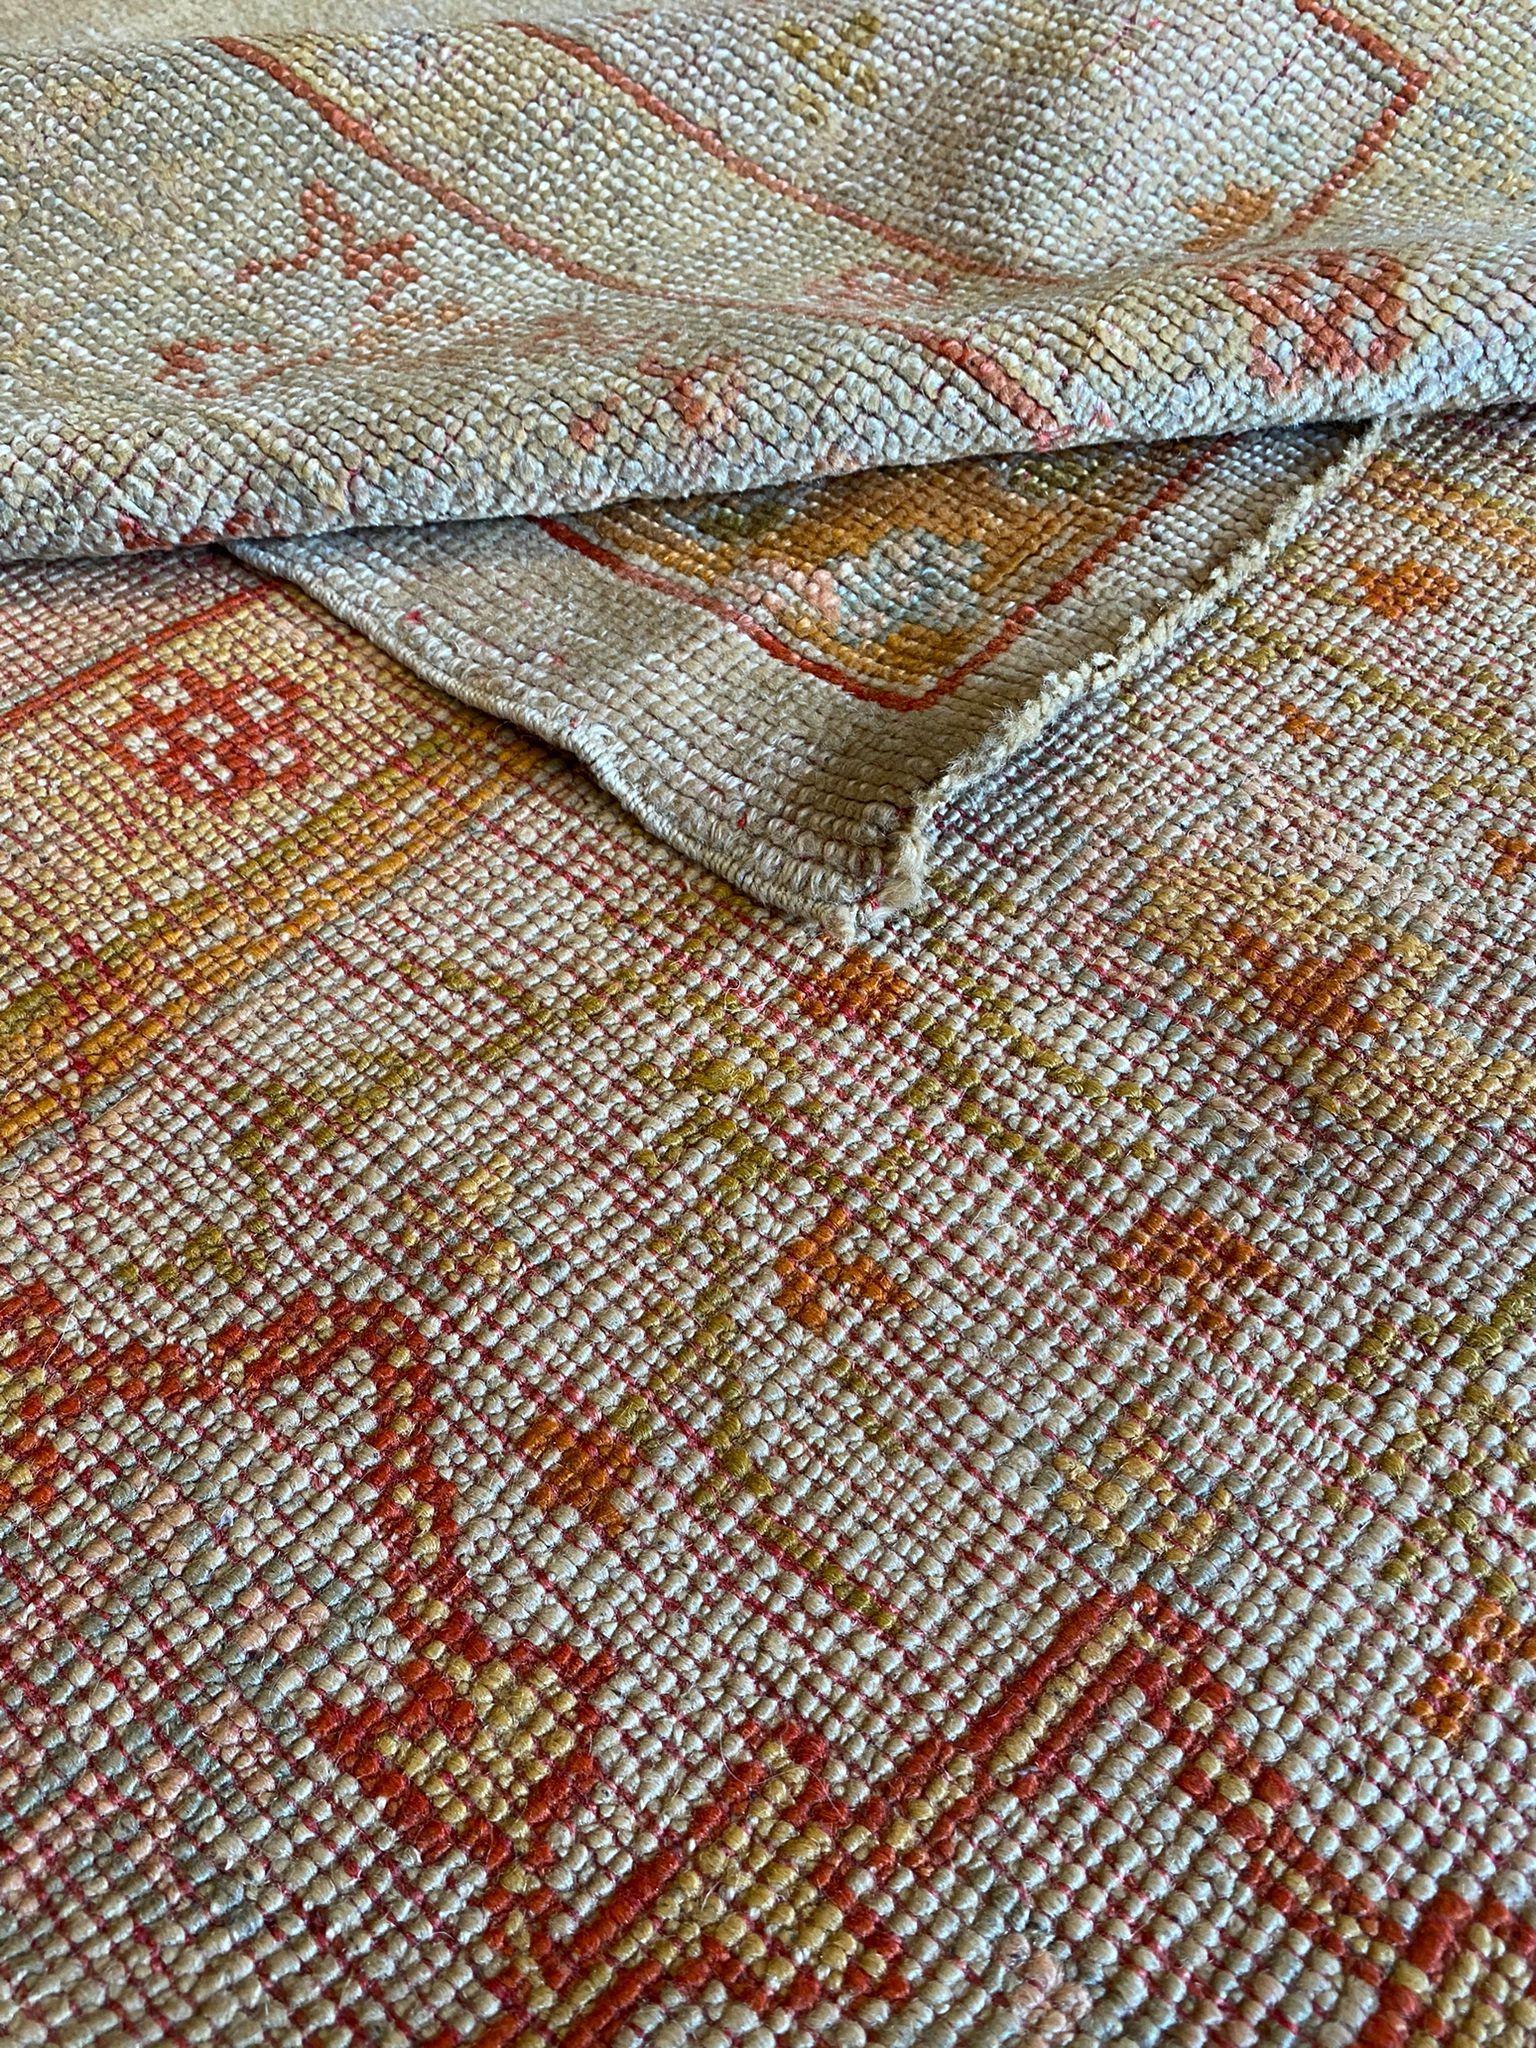 Der antike Oushak-Teppich ist ein atemberaubendes Kunstwerk, das zeitlose Schönheit und Raffinesse ausstrahlt. Seine Faszination liegt in der unglaublich sanften Farbpalette, in der beruhigende Blautöne die Hauptrolle spielen, die durch subtile